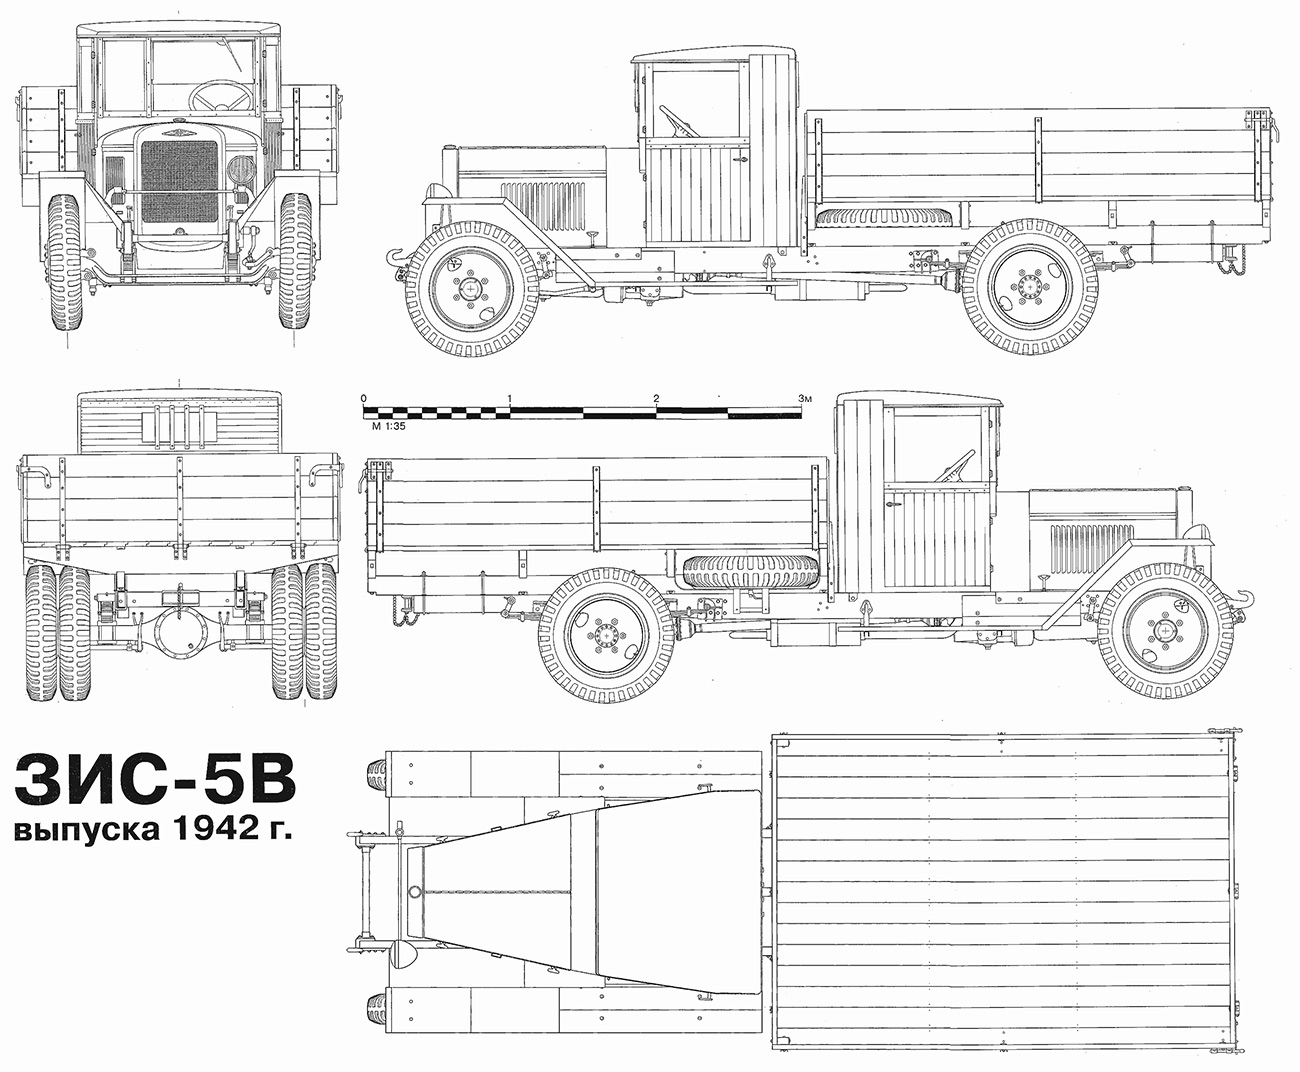 Чертеж ЗИС-5В (военный) - упрощенного варианта грузовика военного времени